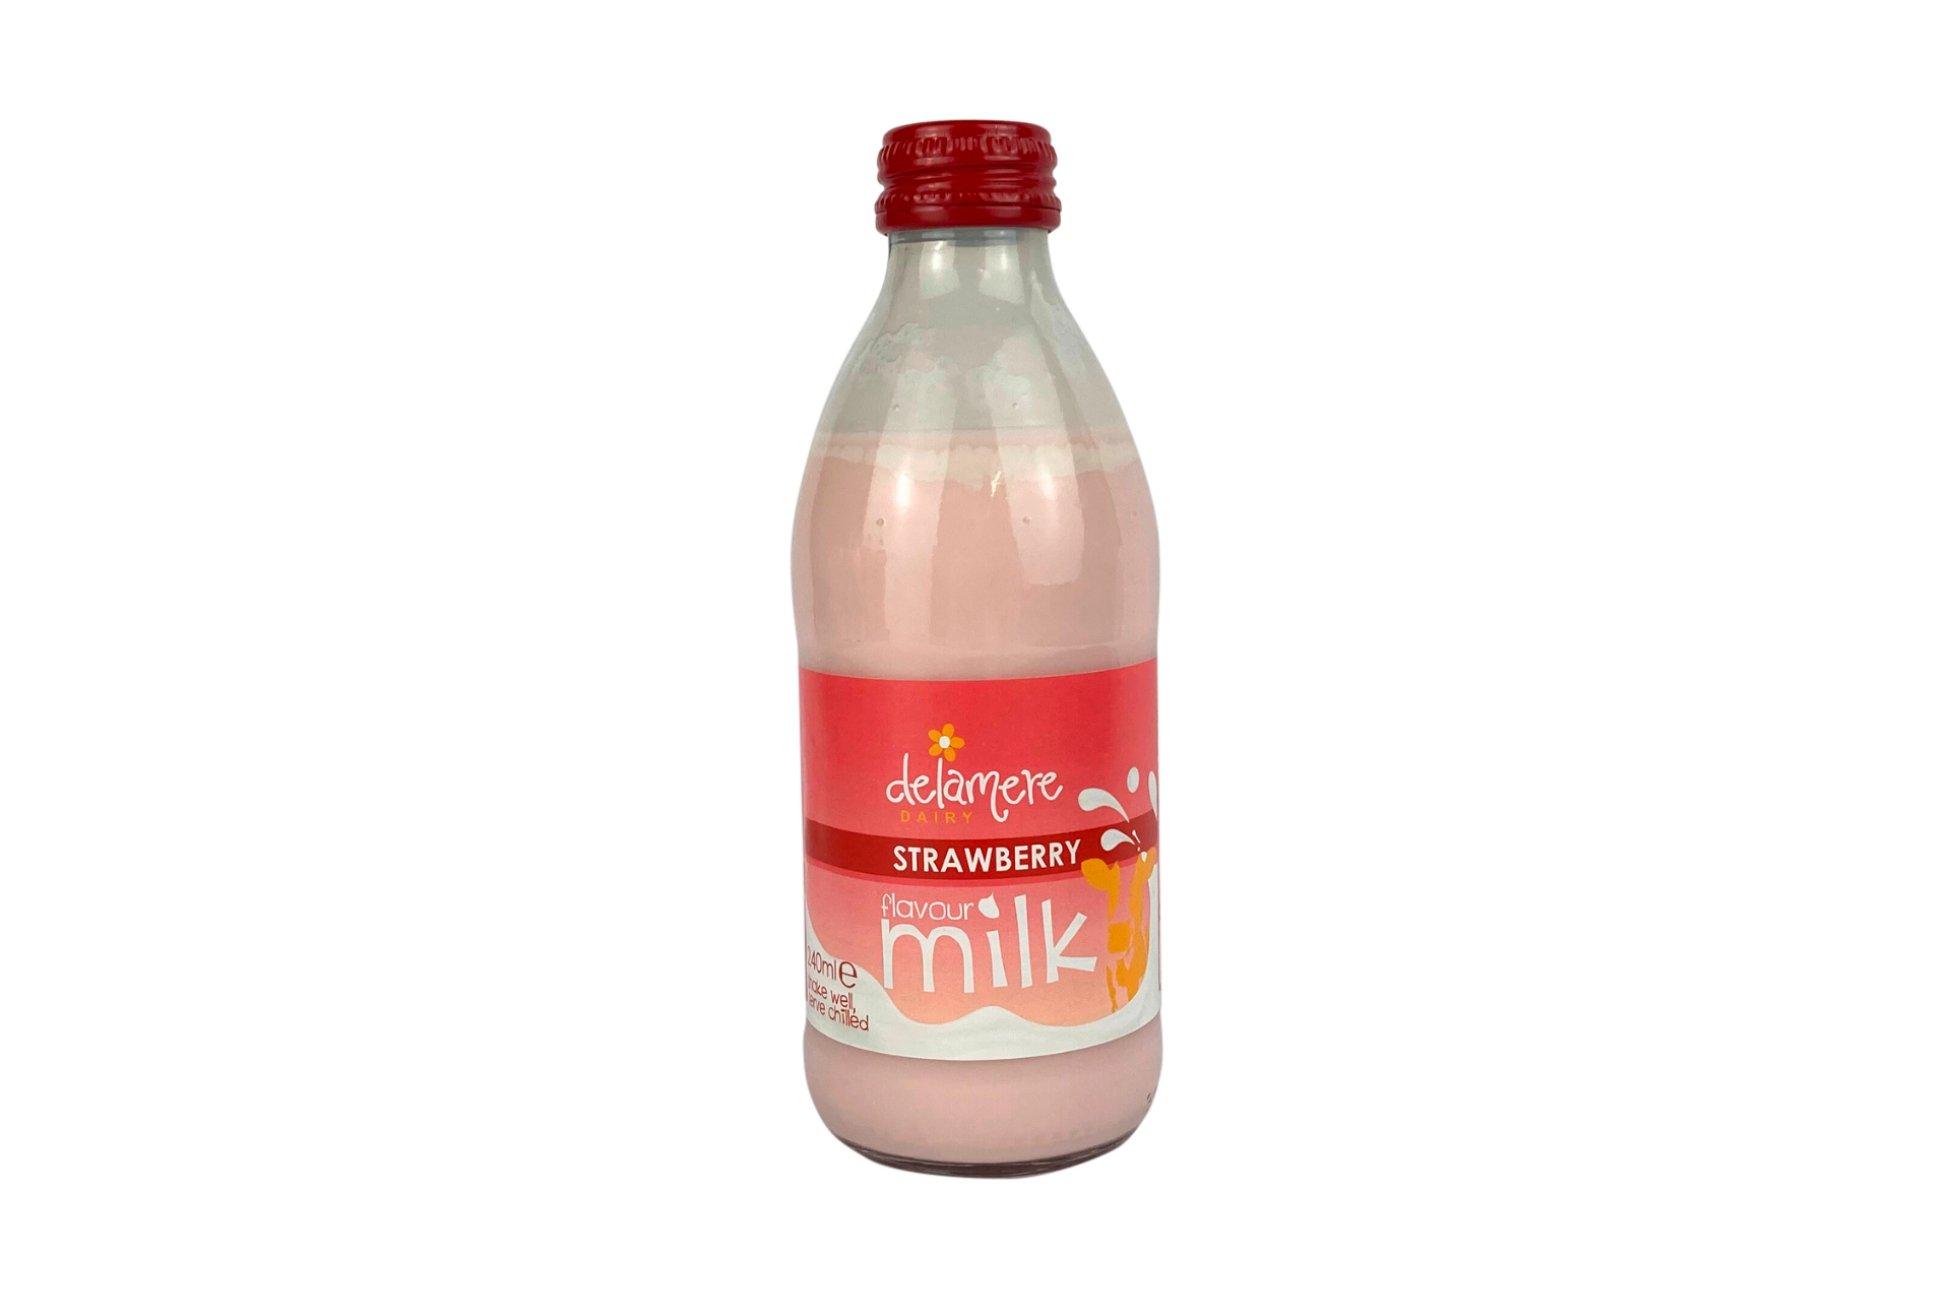 Delamere Dairy Strawberry Flavoured Milk